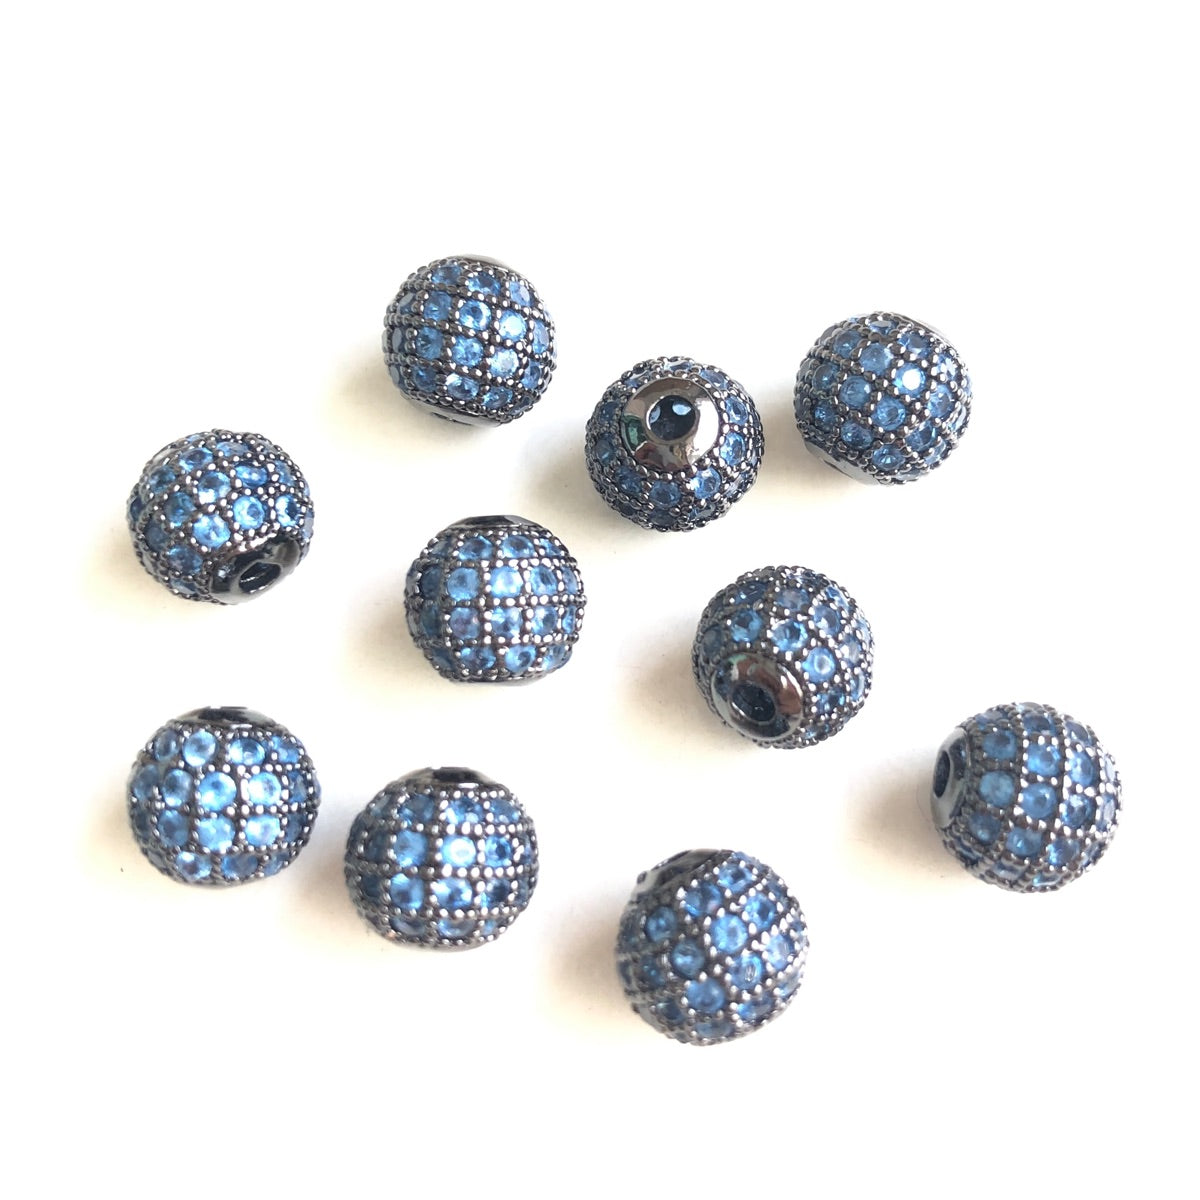 10pcs/lot 8mm Lake Blue CZ Paved Ball Beads Spacers Black CZ Paved Spacers Ball Beads Colorful Zirconia Charms Beads Beyond